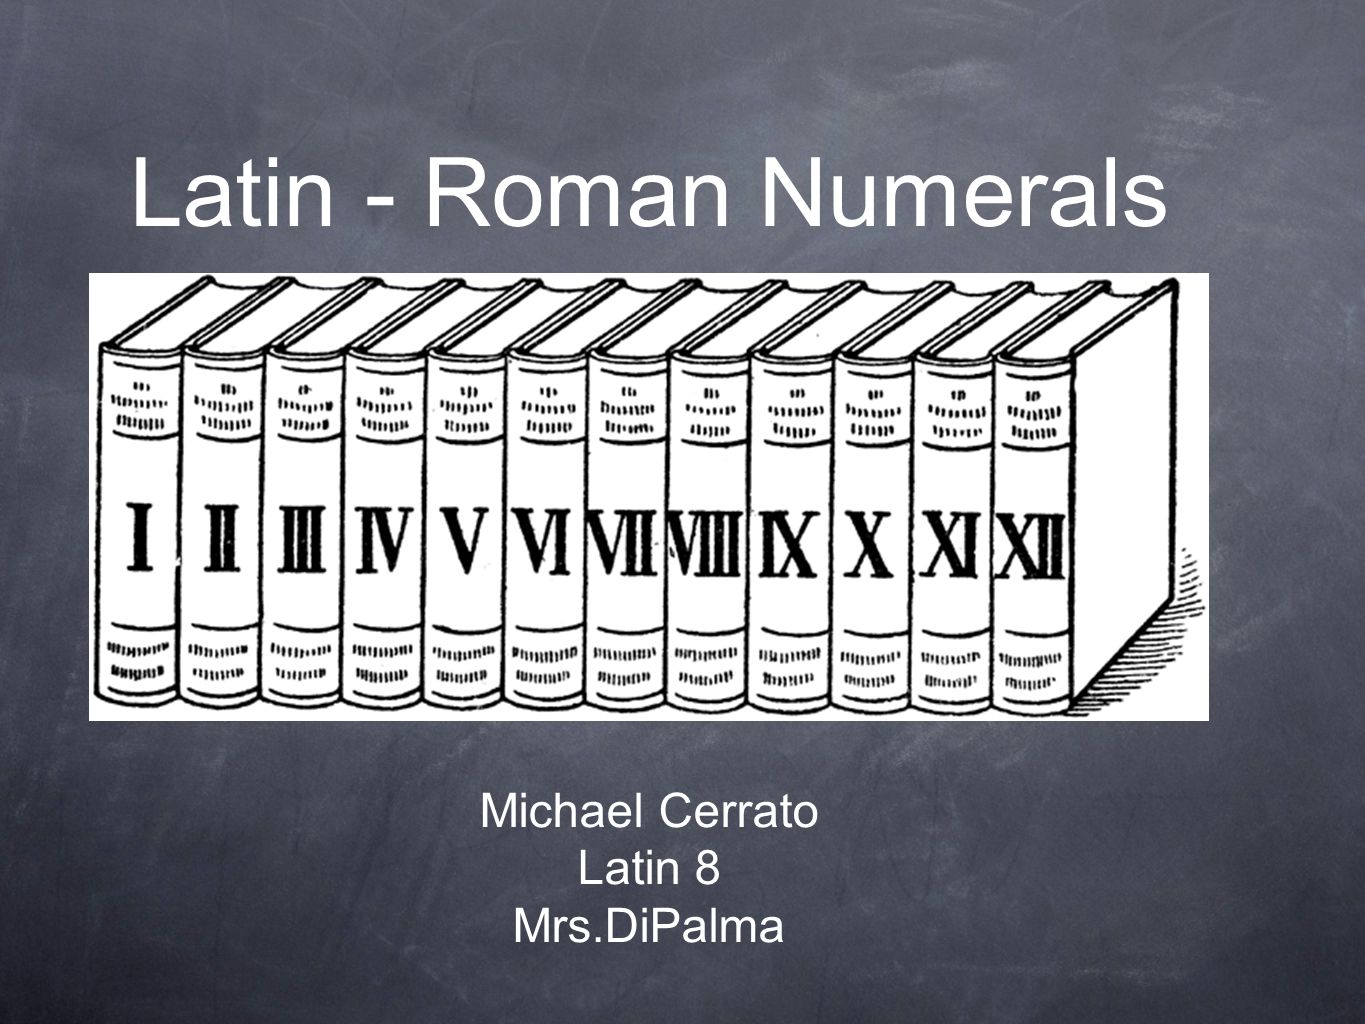 8 in roman numerals